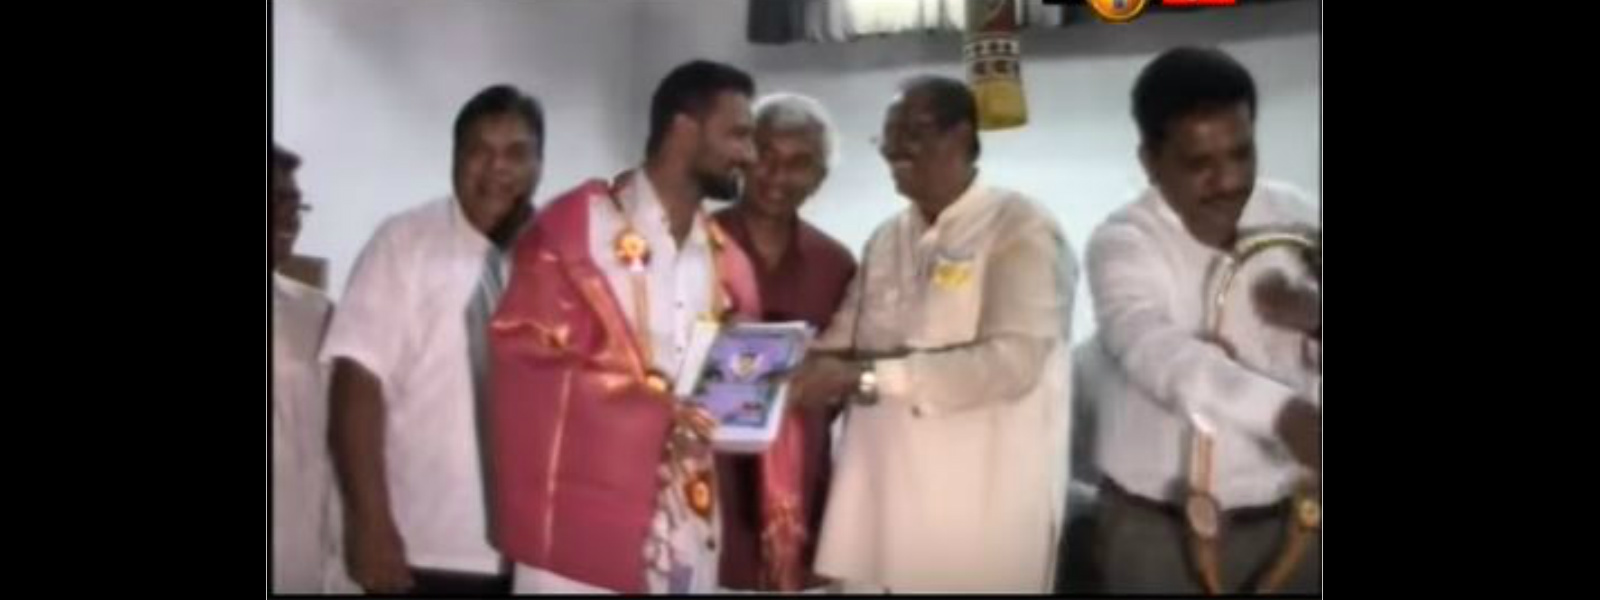 ஊடகவியலாளர் ஐயாதுரை கஜமுகனுக்கு தந்தைசெல்வா விருது